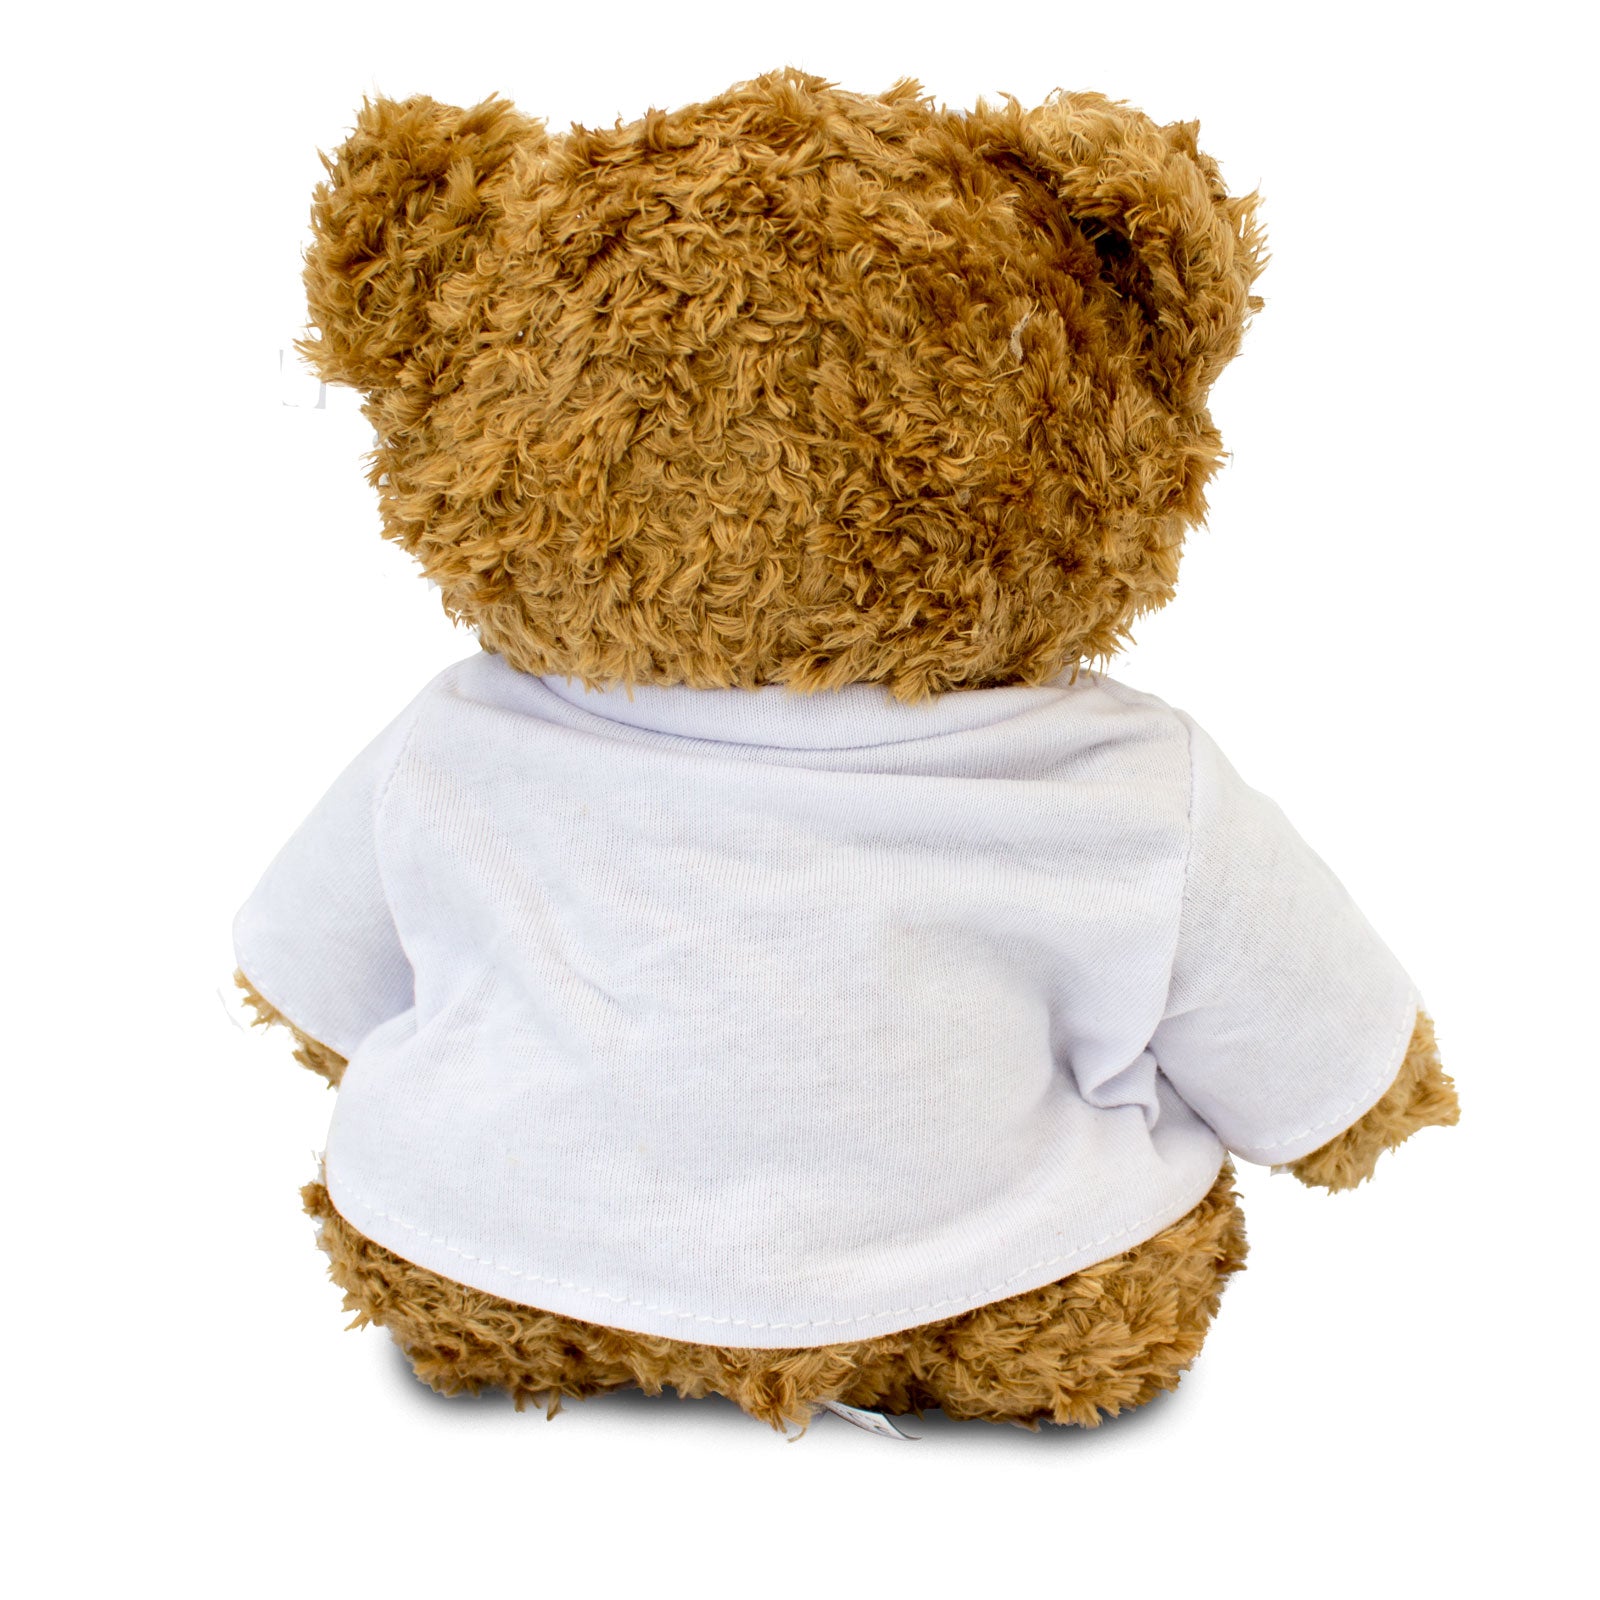 Get Well Soon Arin - Teddy Bear